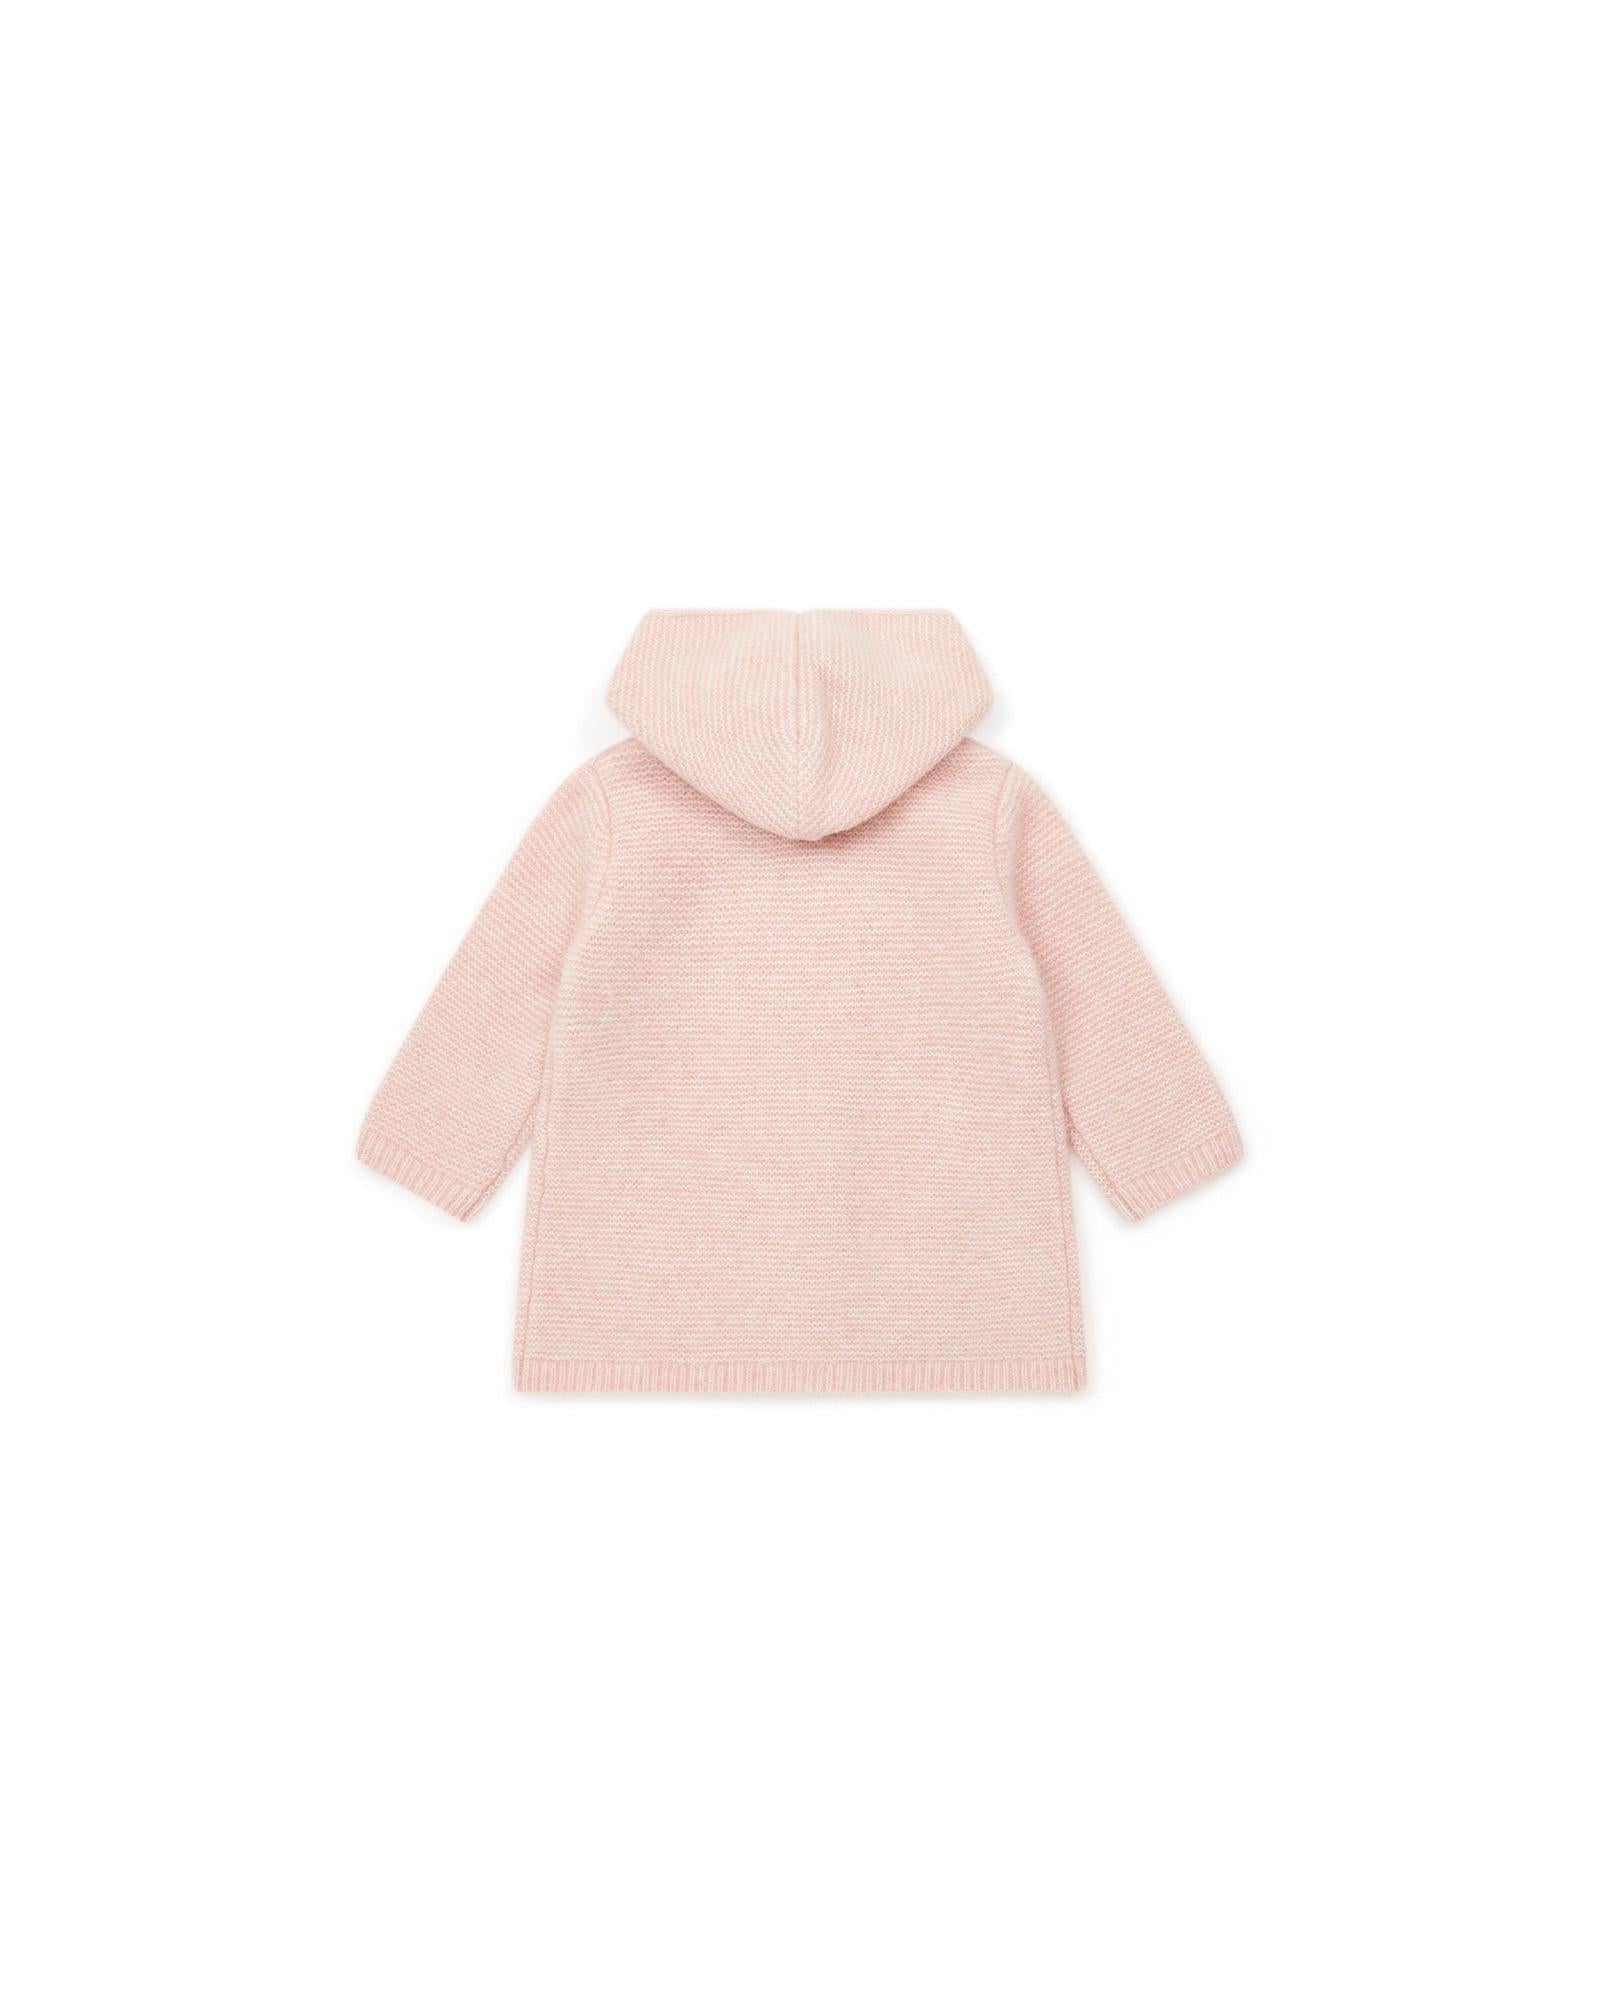 Manteau Miro rose Bébé en tricot point mousse